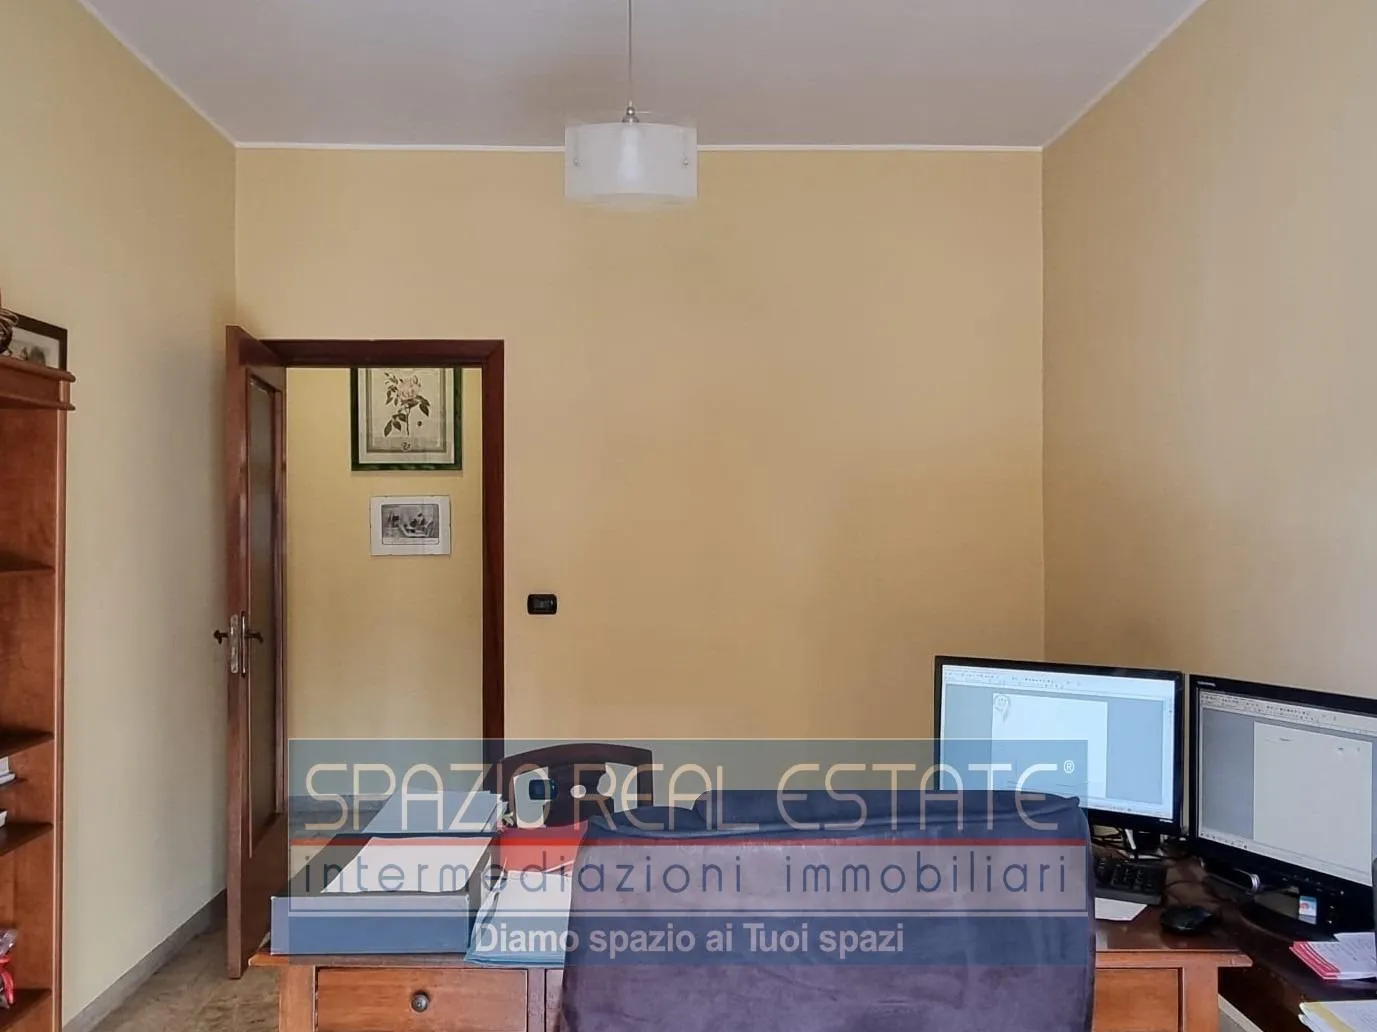 Immagine per Ufficio in vendita a Pescara via Dei Marrucini 11